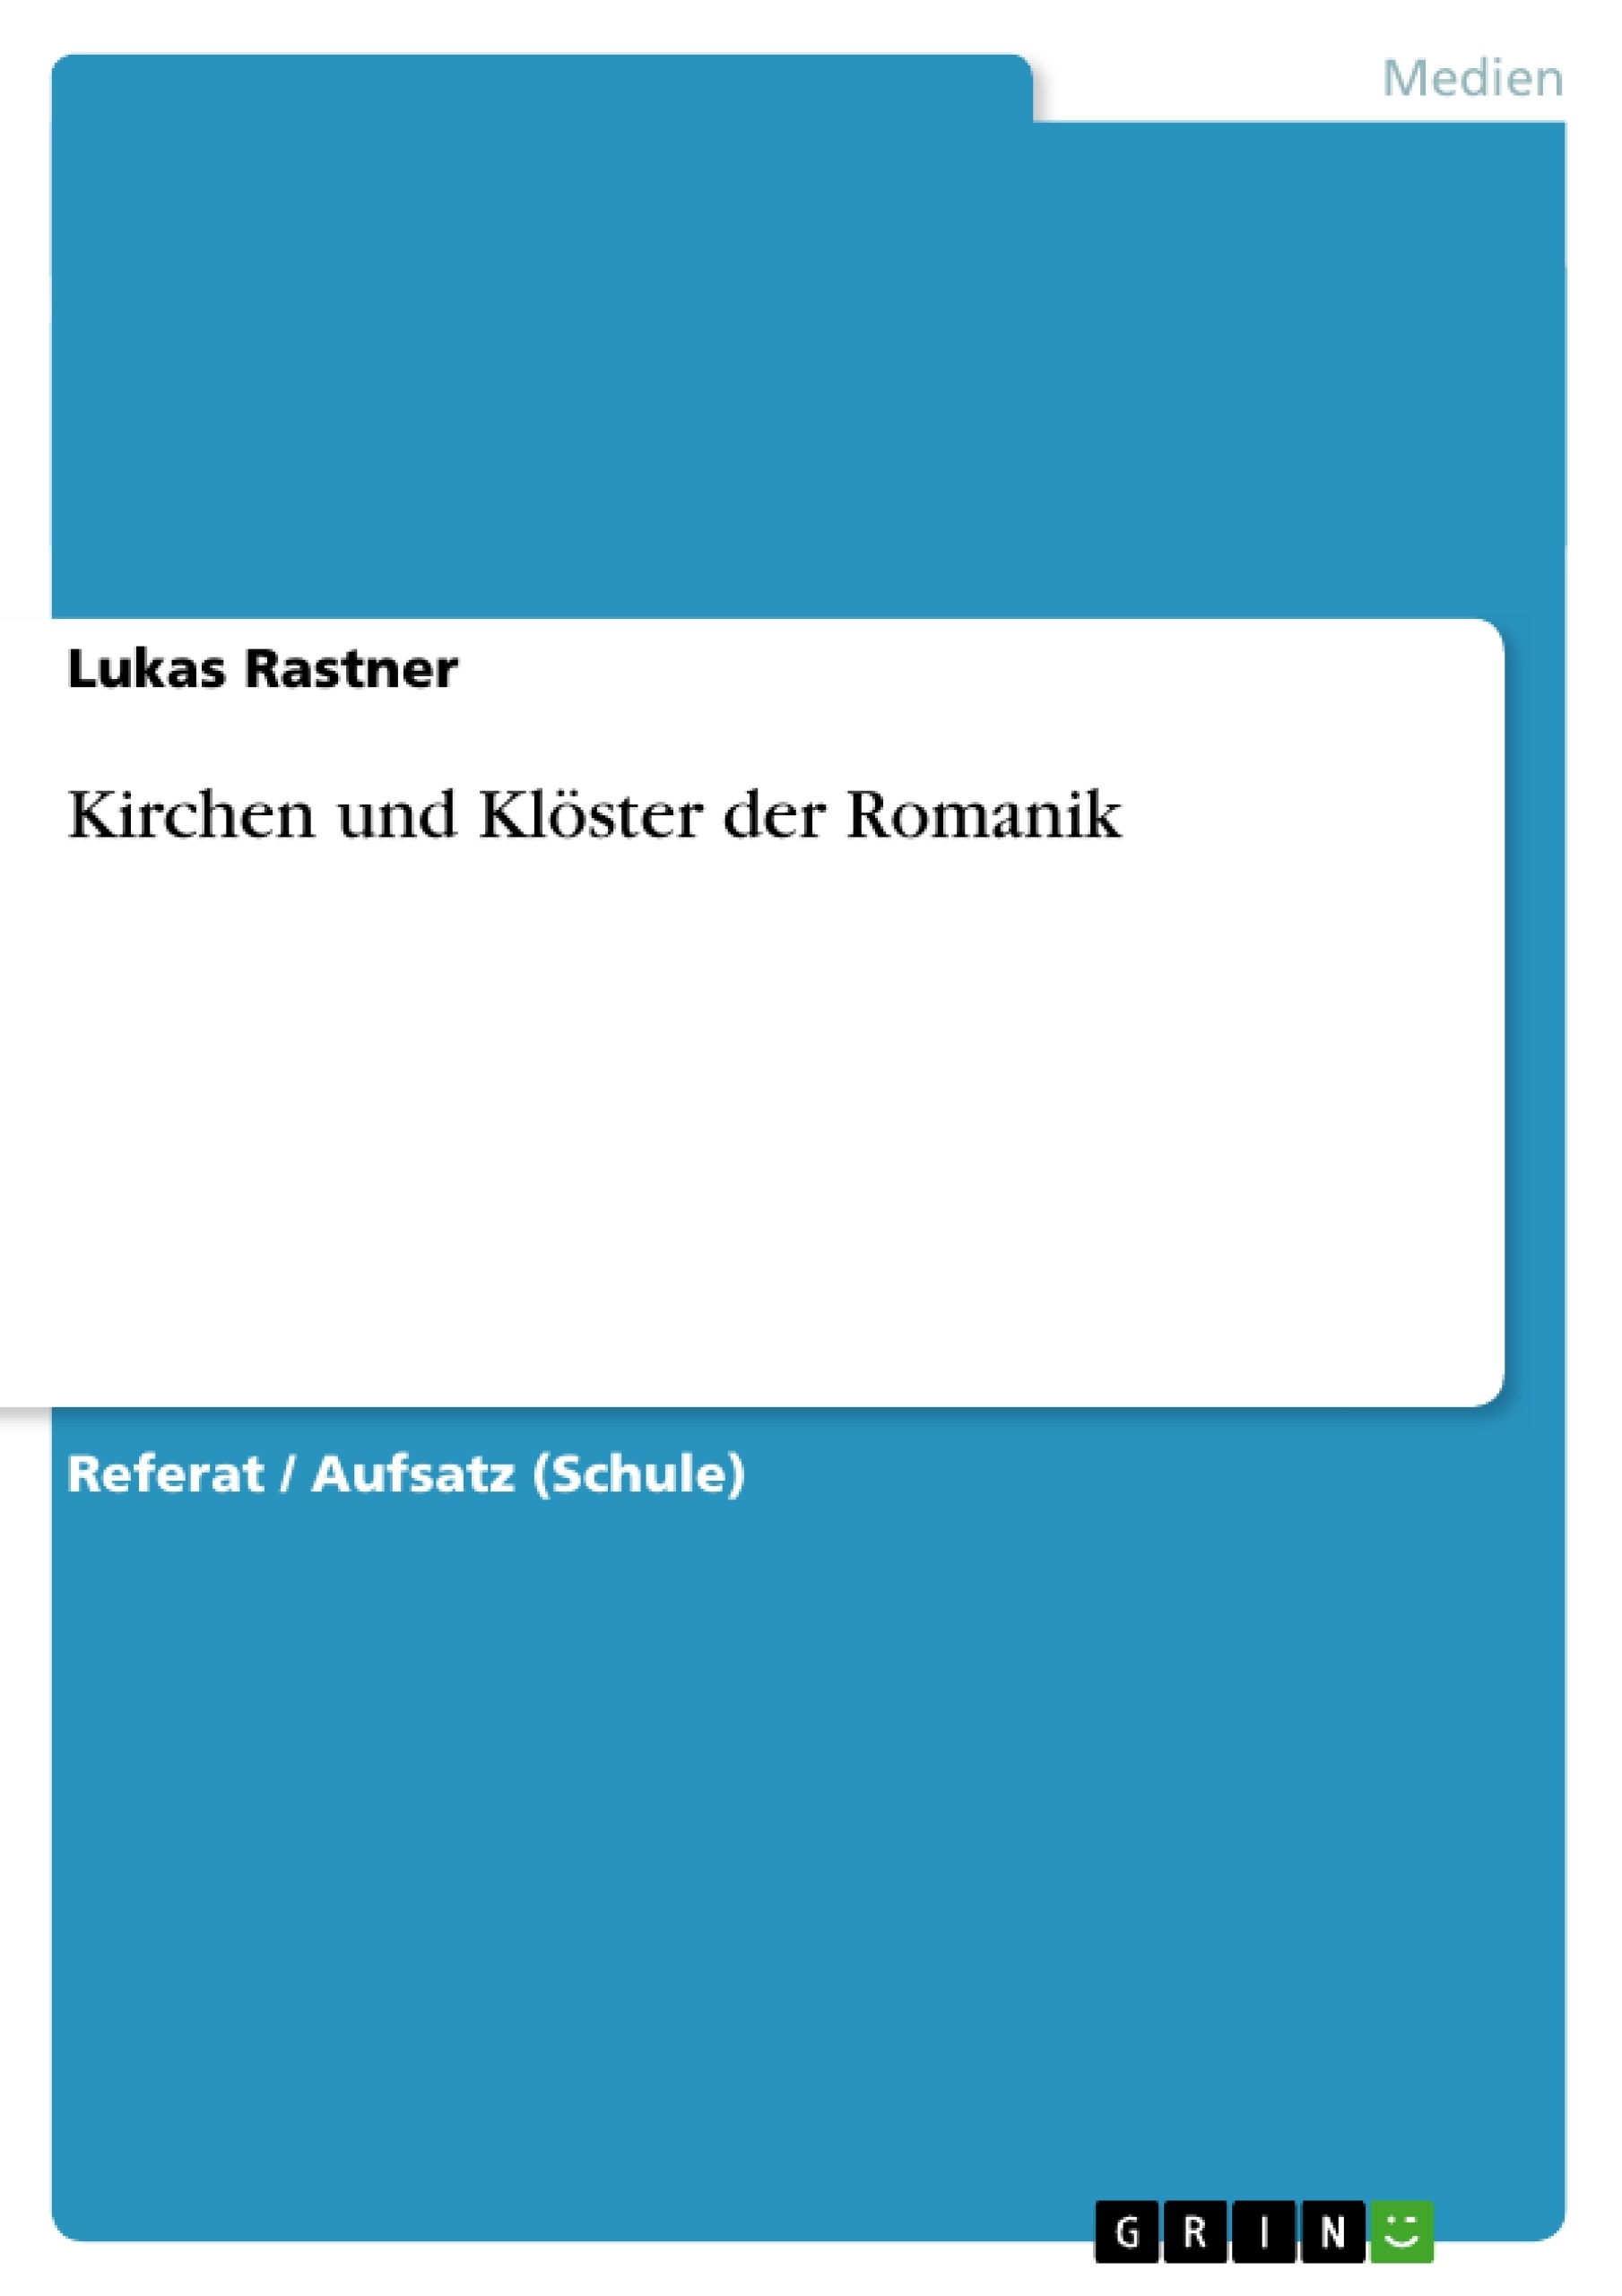 Title: Kirchen und Klöster der Romanik